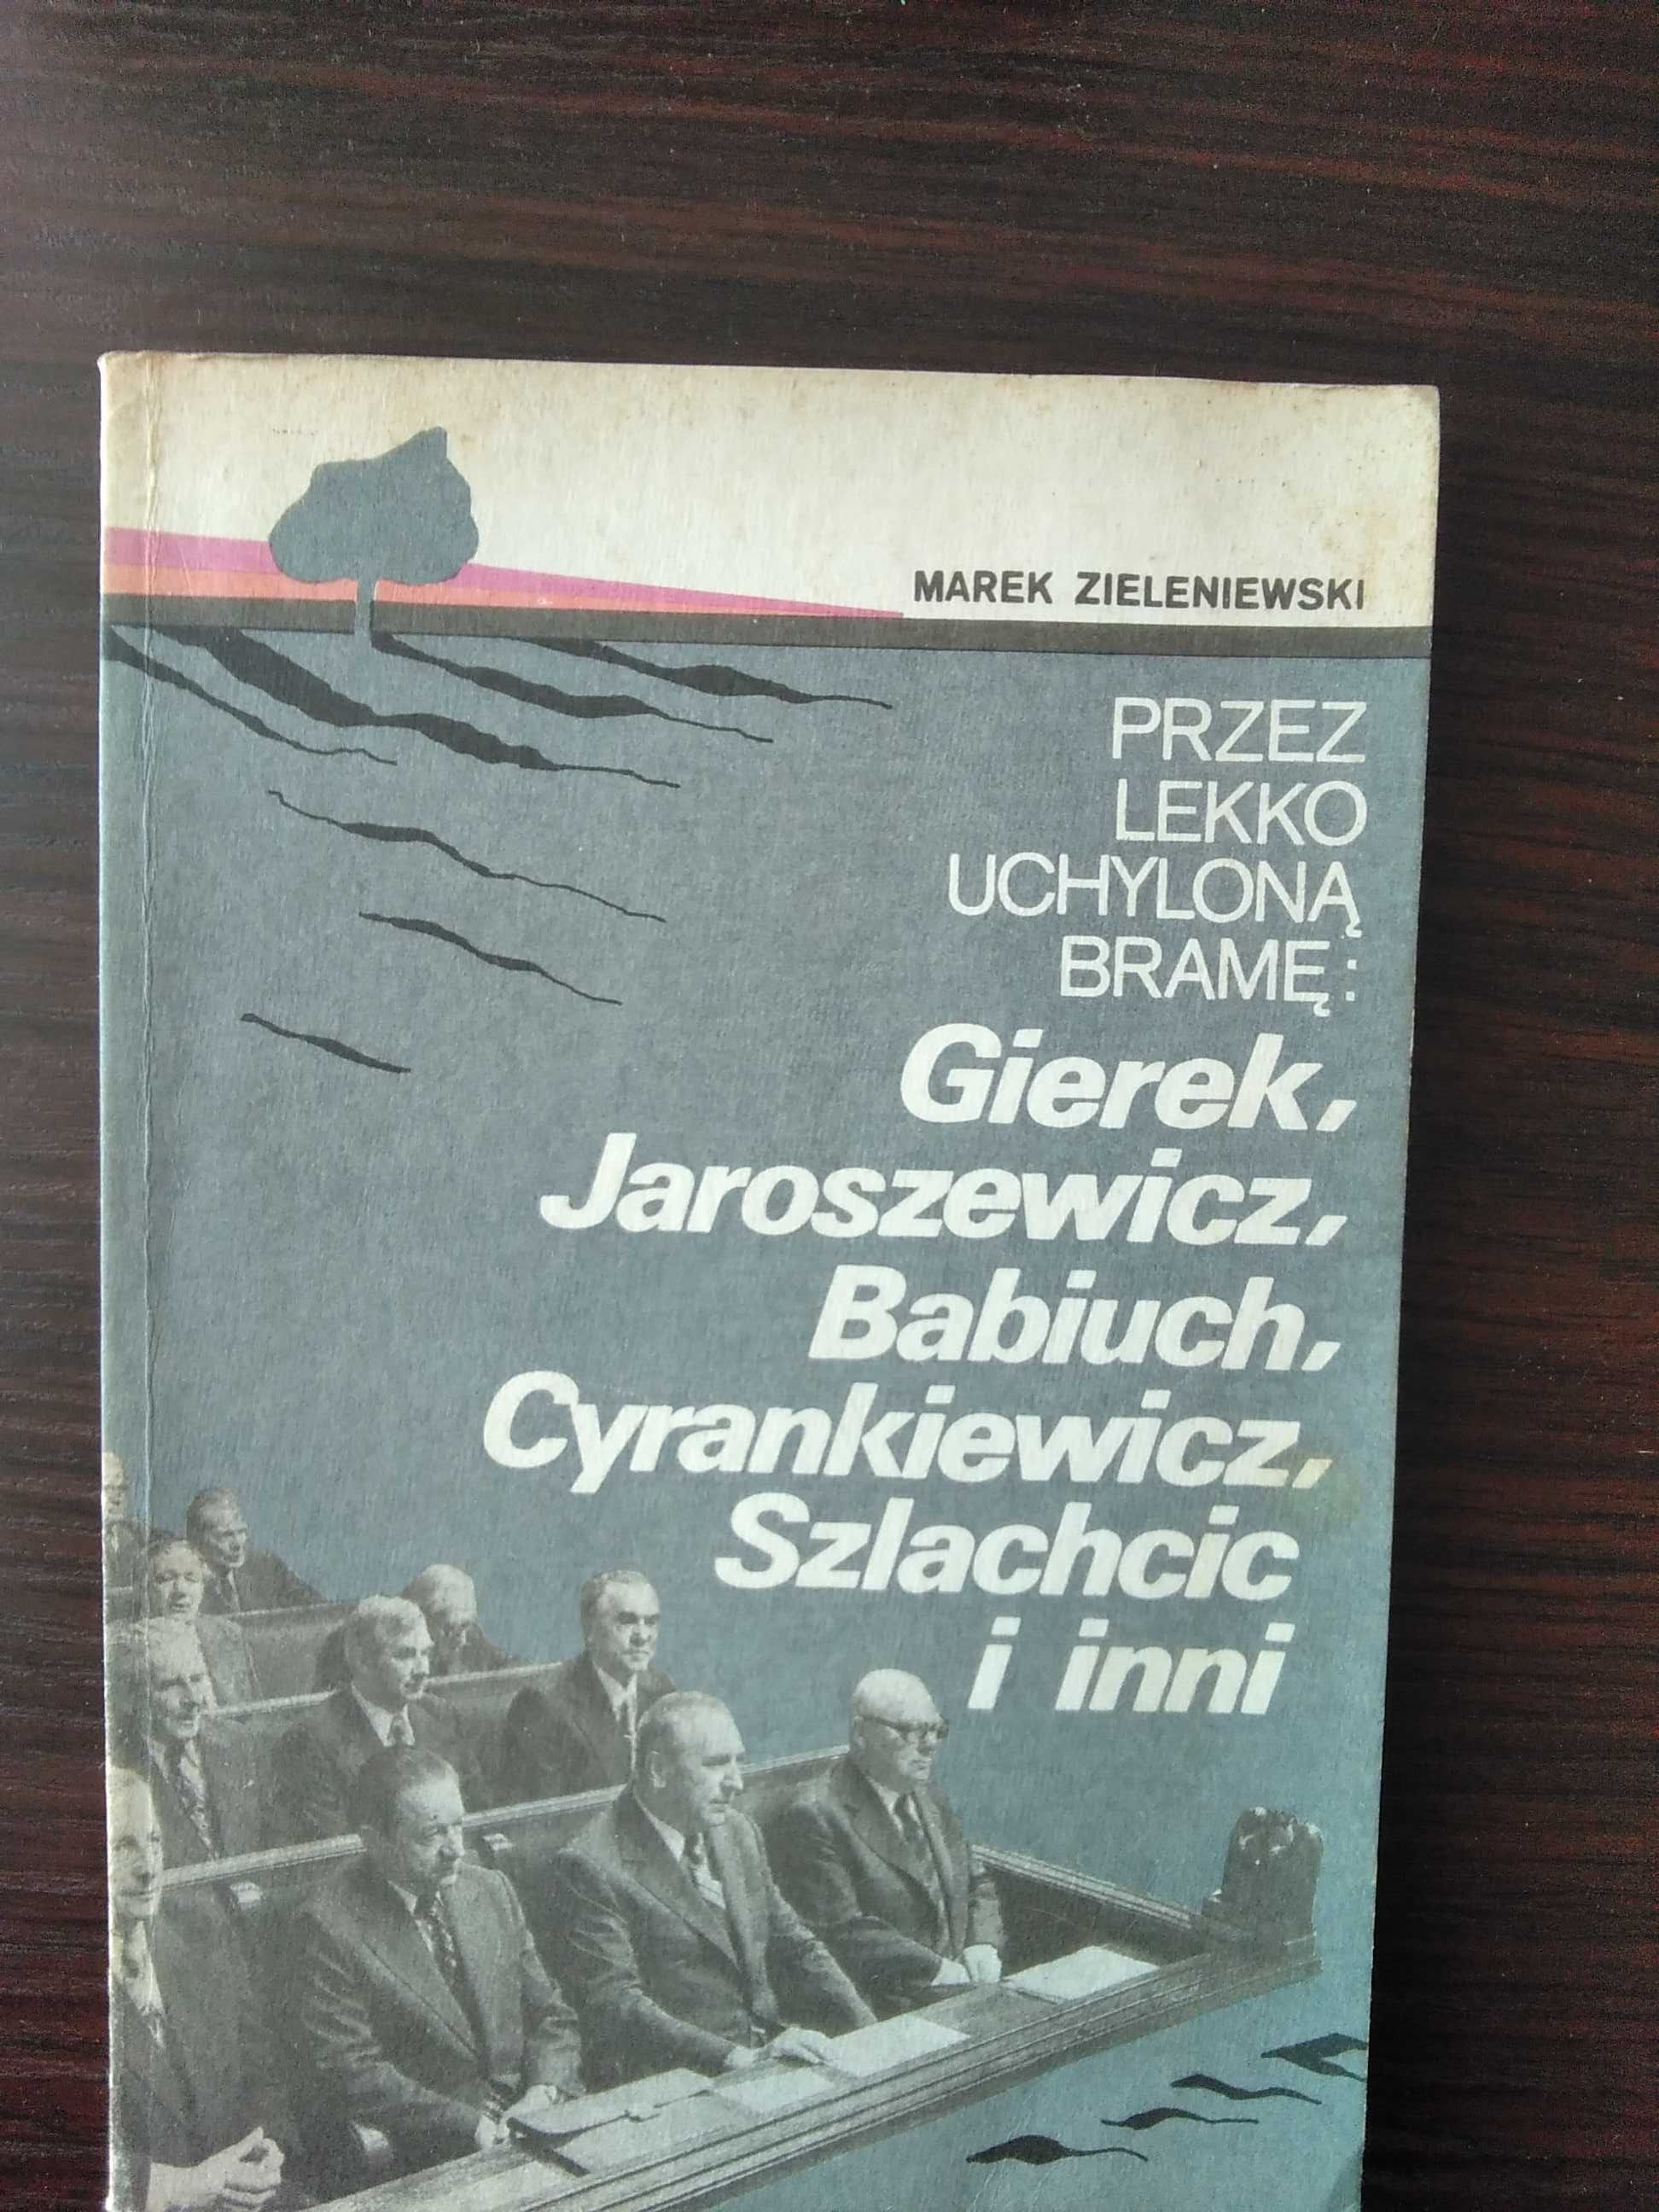 Przez lekko uchyloną bramę: Gierek, Jaroszewicz... Marek Zieleniewski